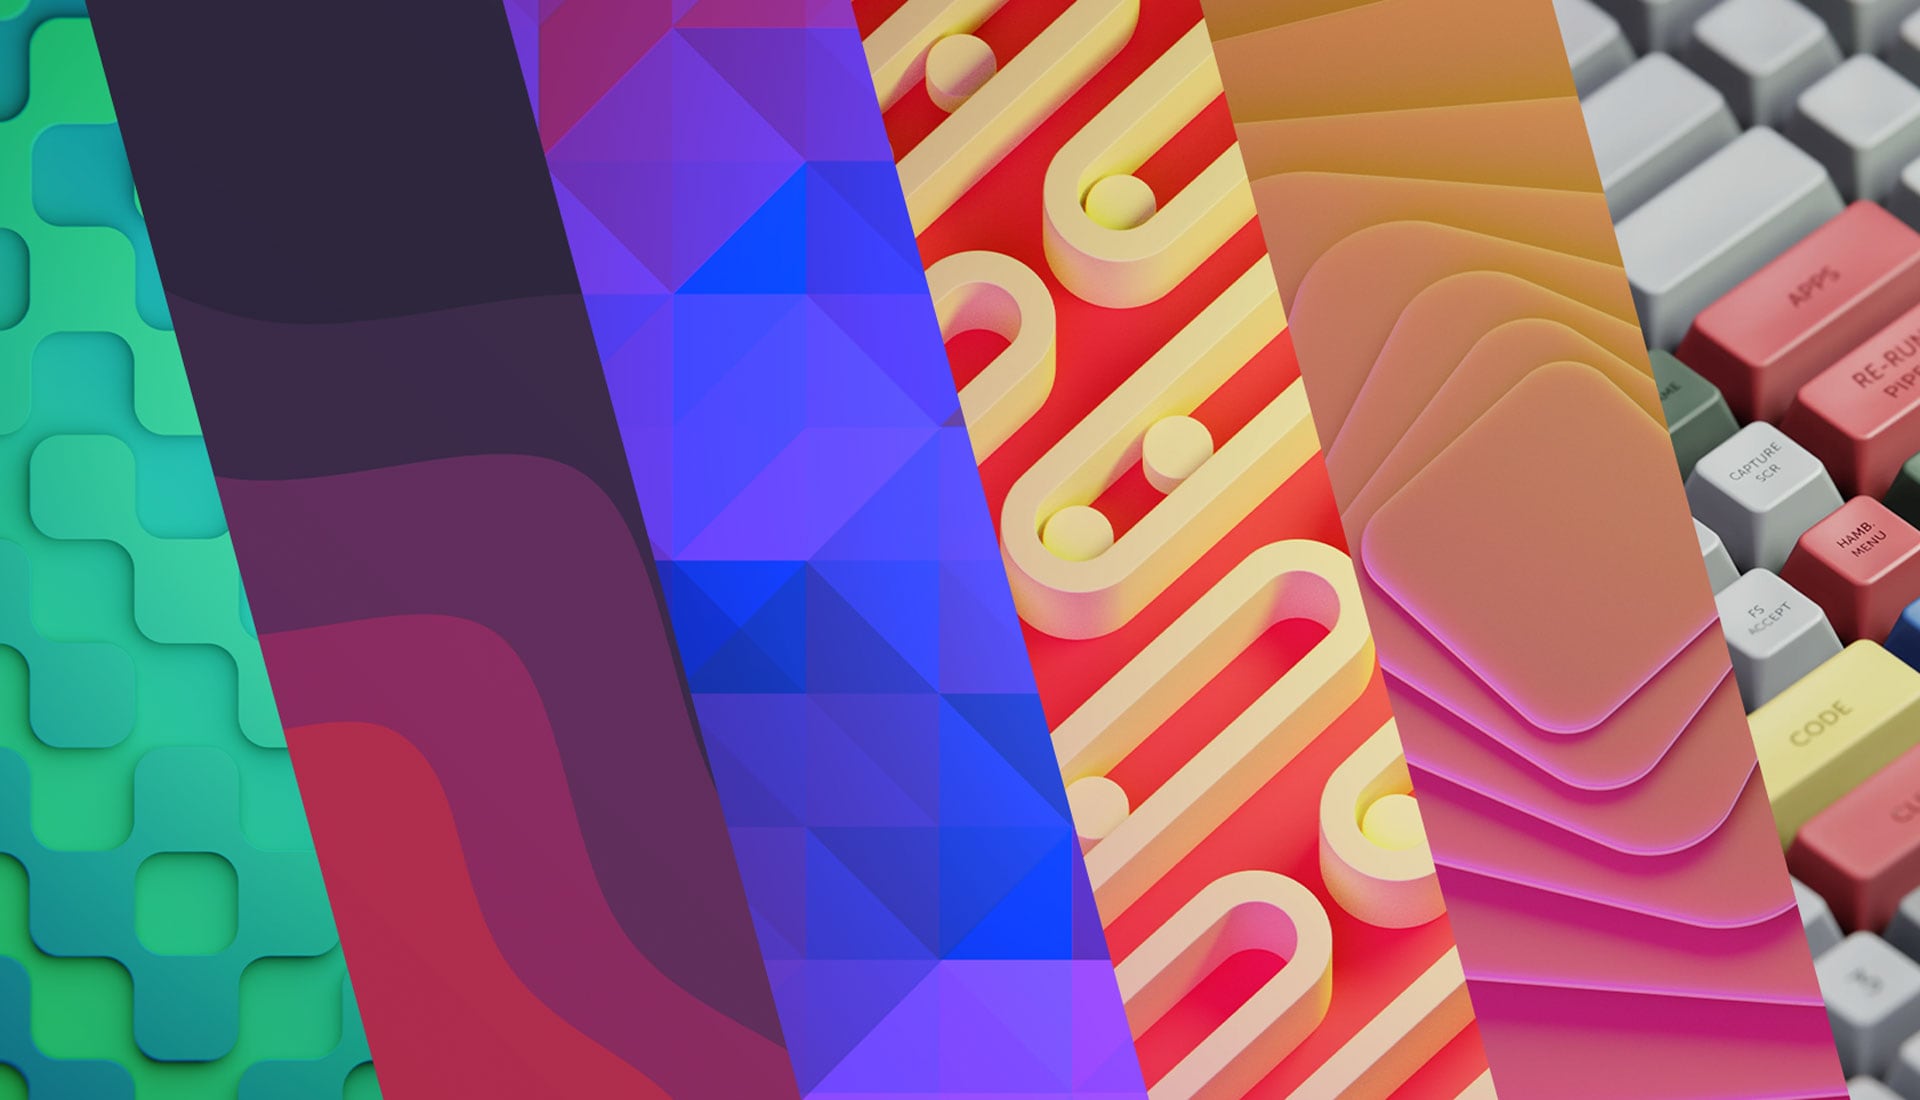 Download 10 Beautiful Wallpapers for Your Ubuntu Desktop